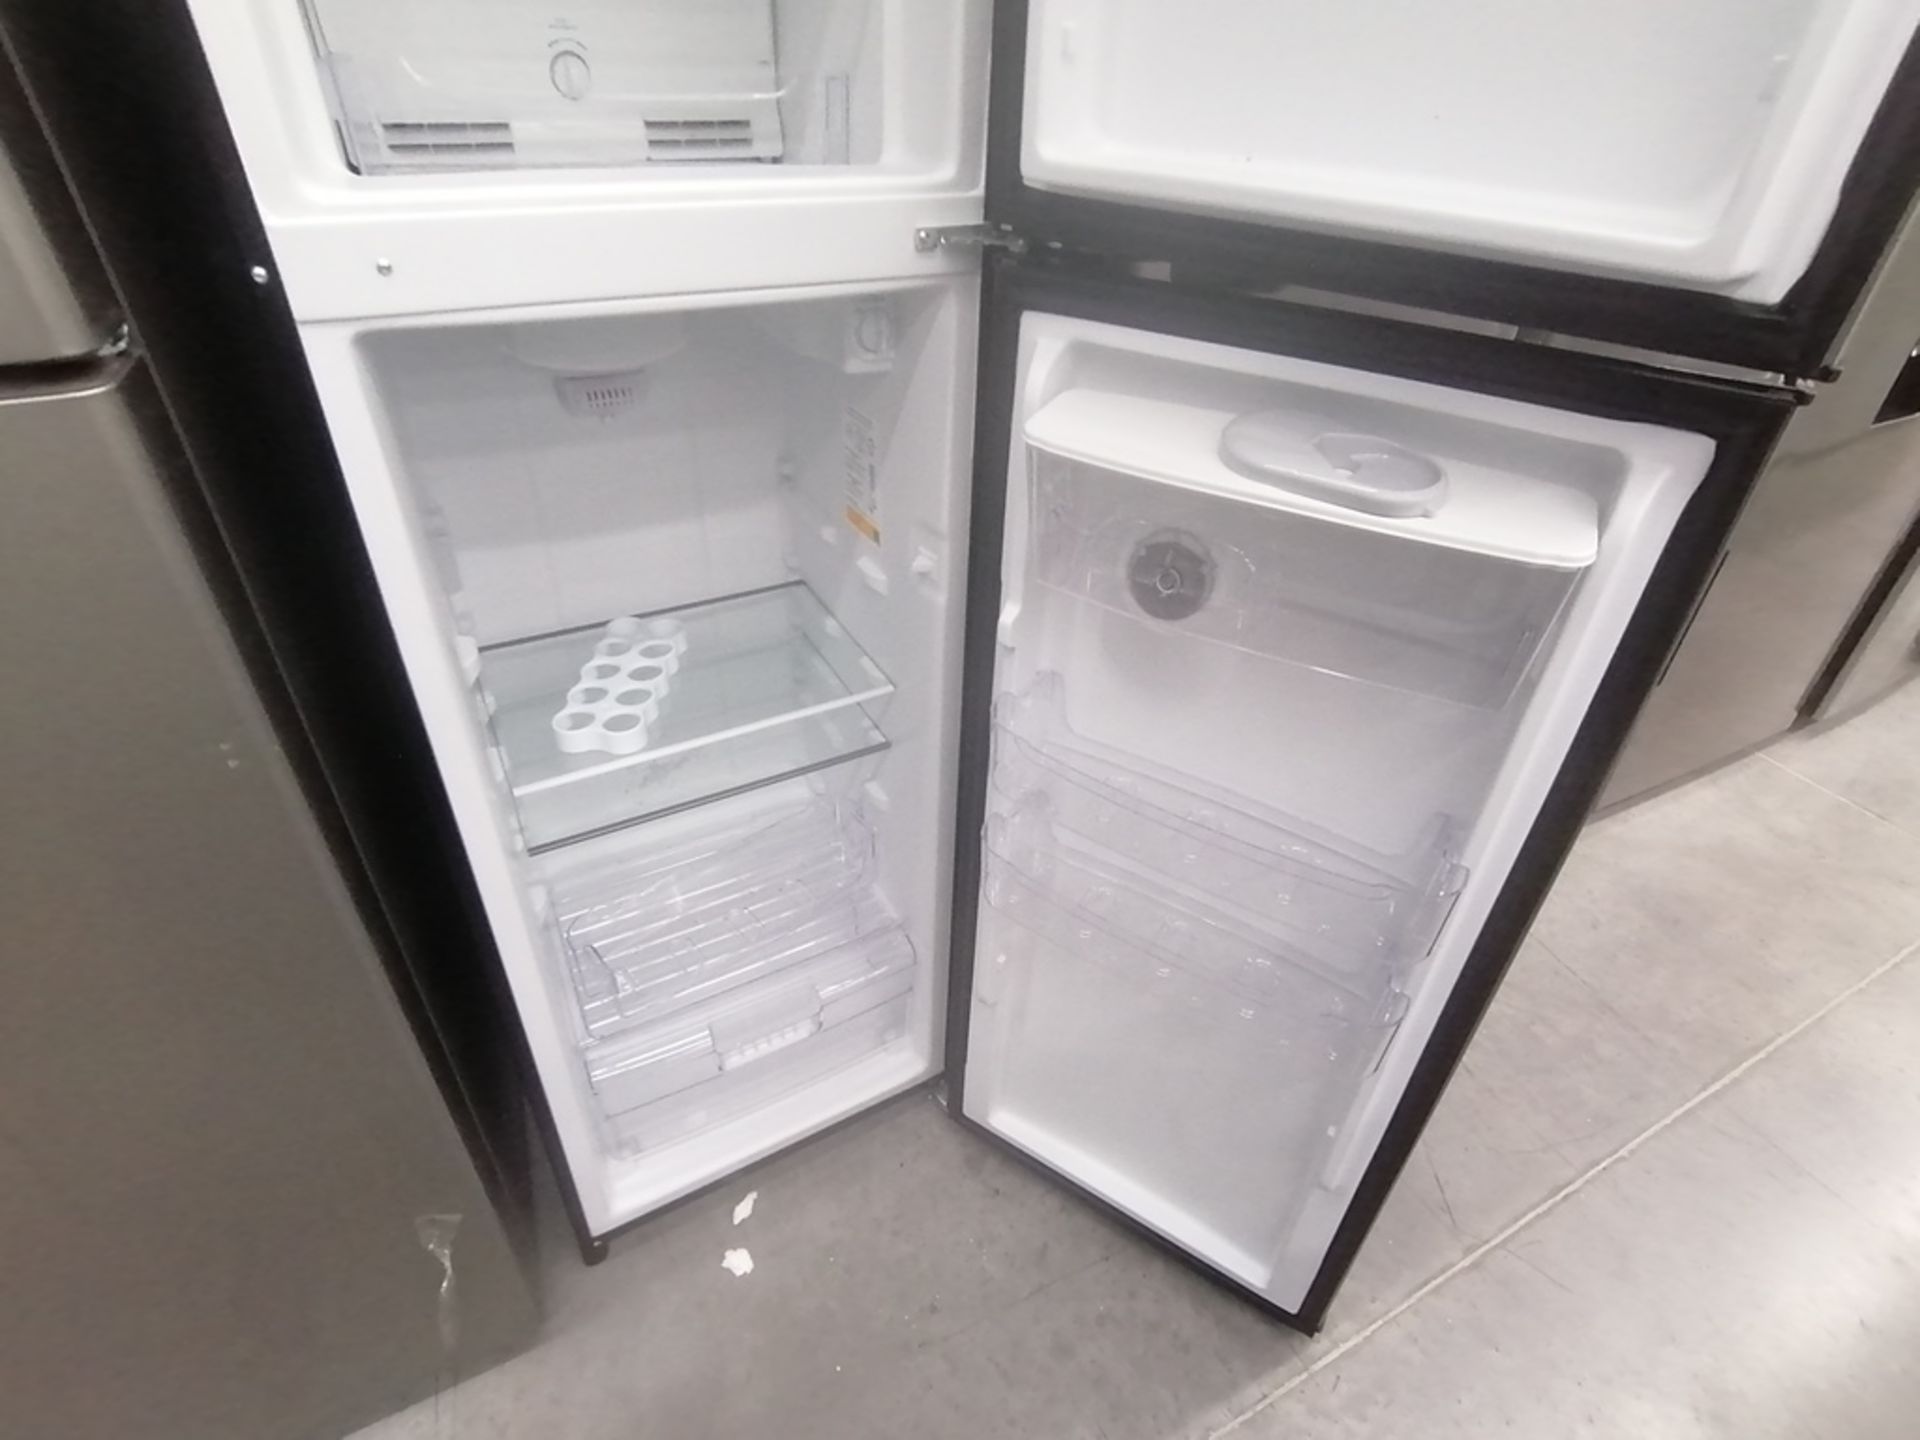 Lote de 2 refrigeradores incluye: 1 Refrigerador con dispensador de agua, Marca Whirlpool, Modelo W - Image 10 of 15